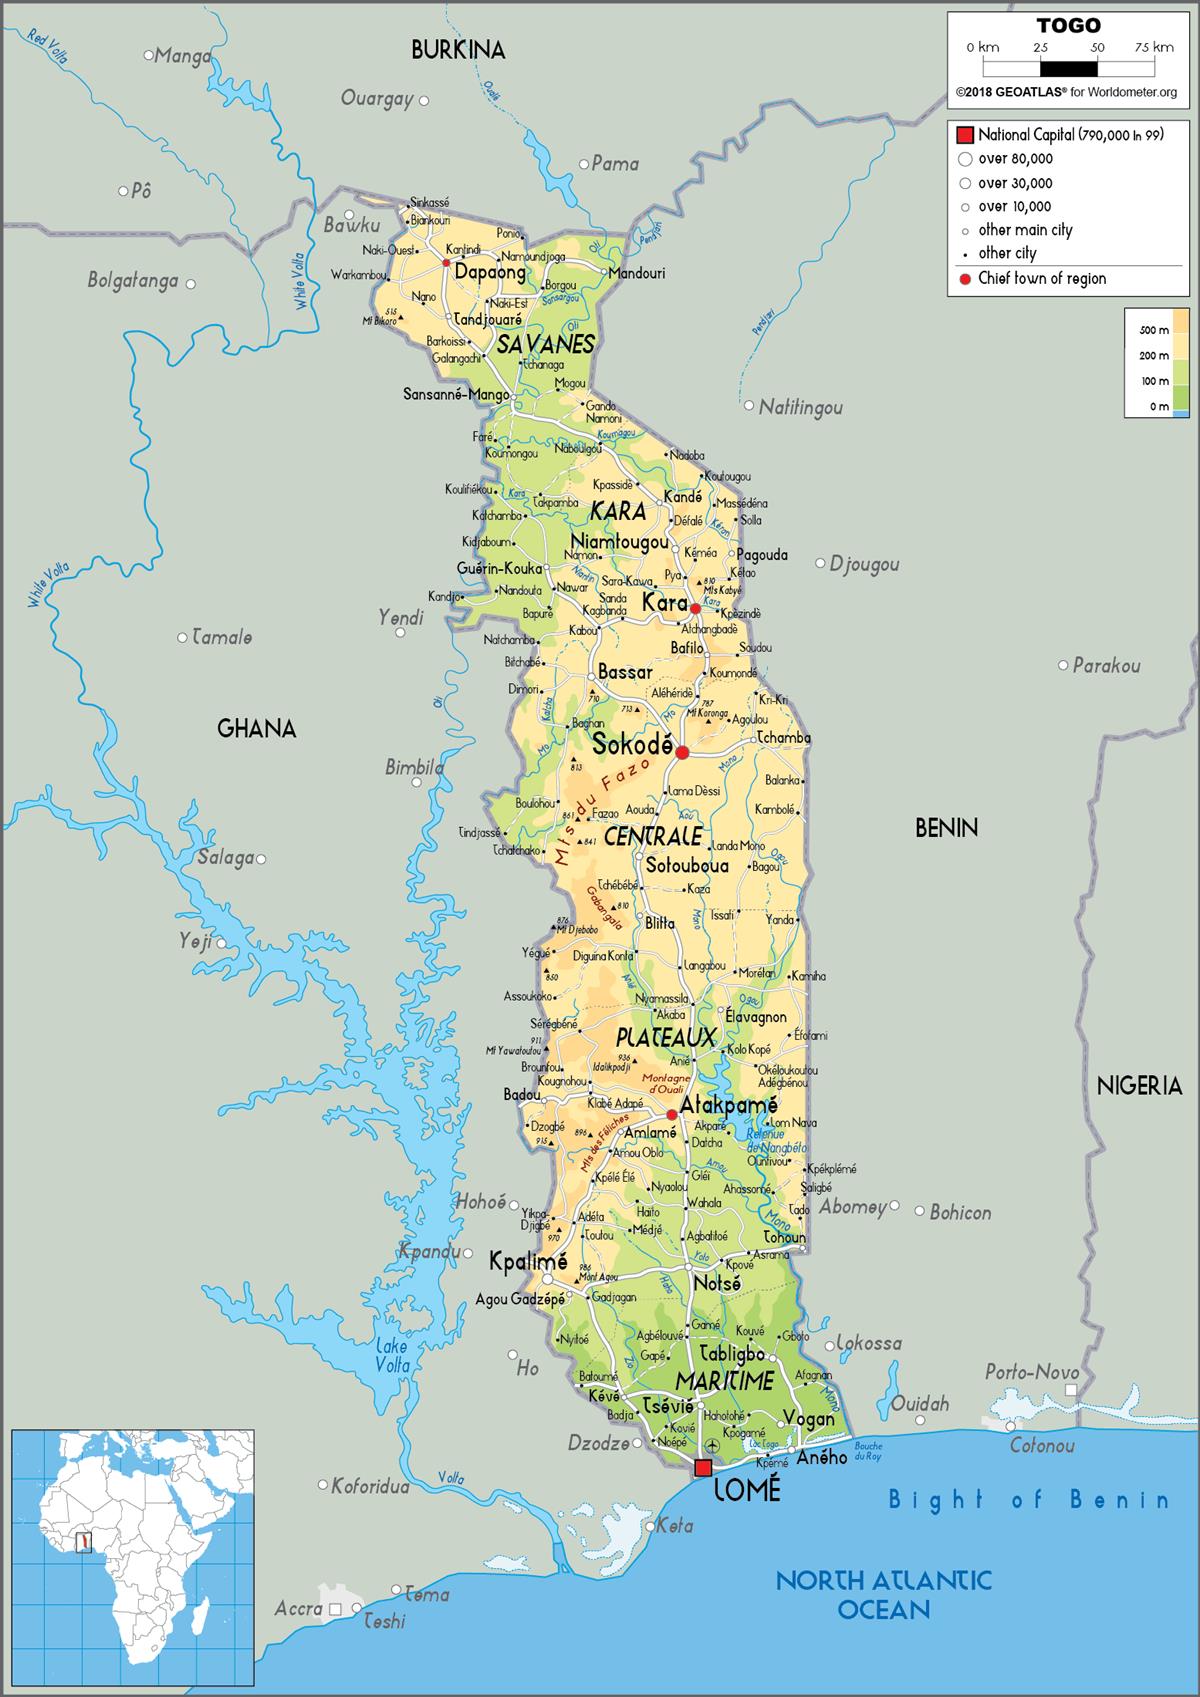 [Update] Bản đồ hành chính đất nước Togo (Togo Map) phóng to năm 2022 16